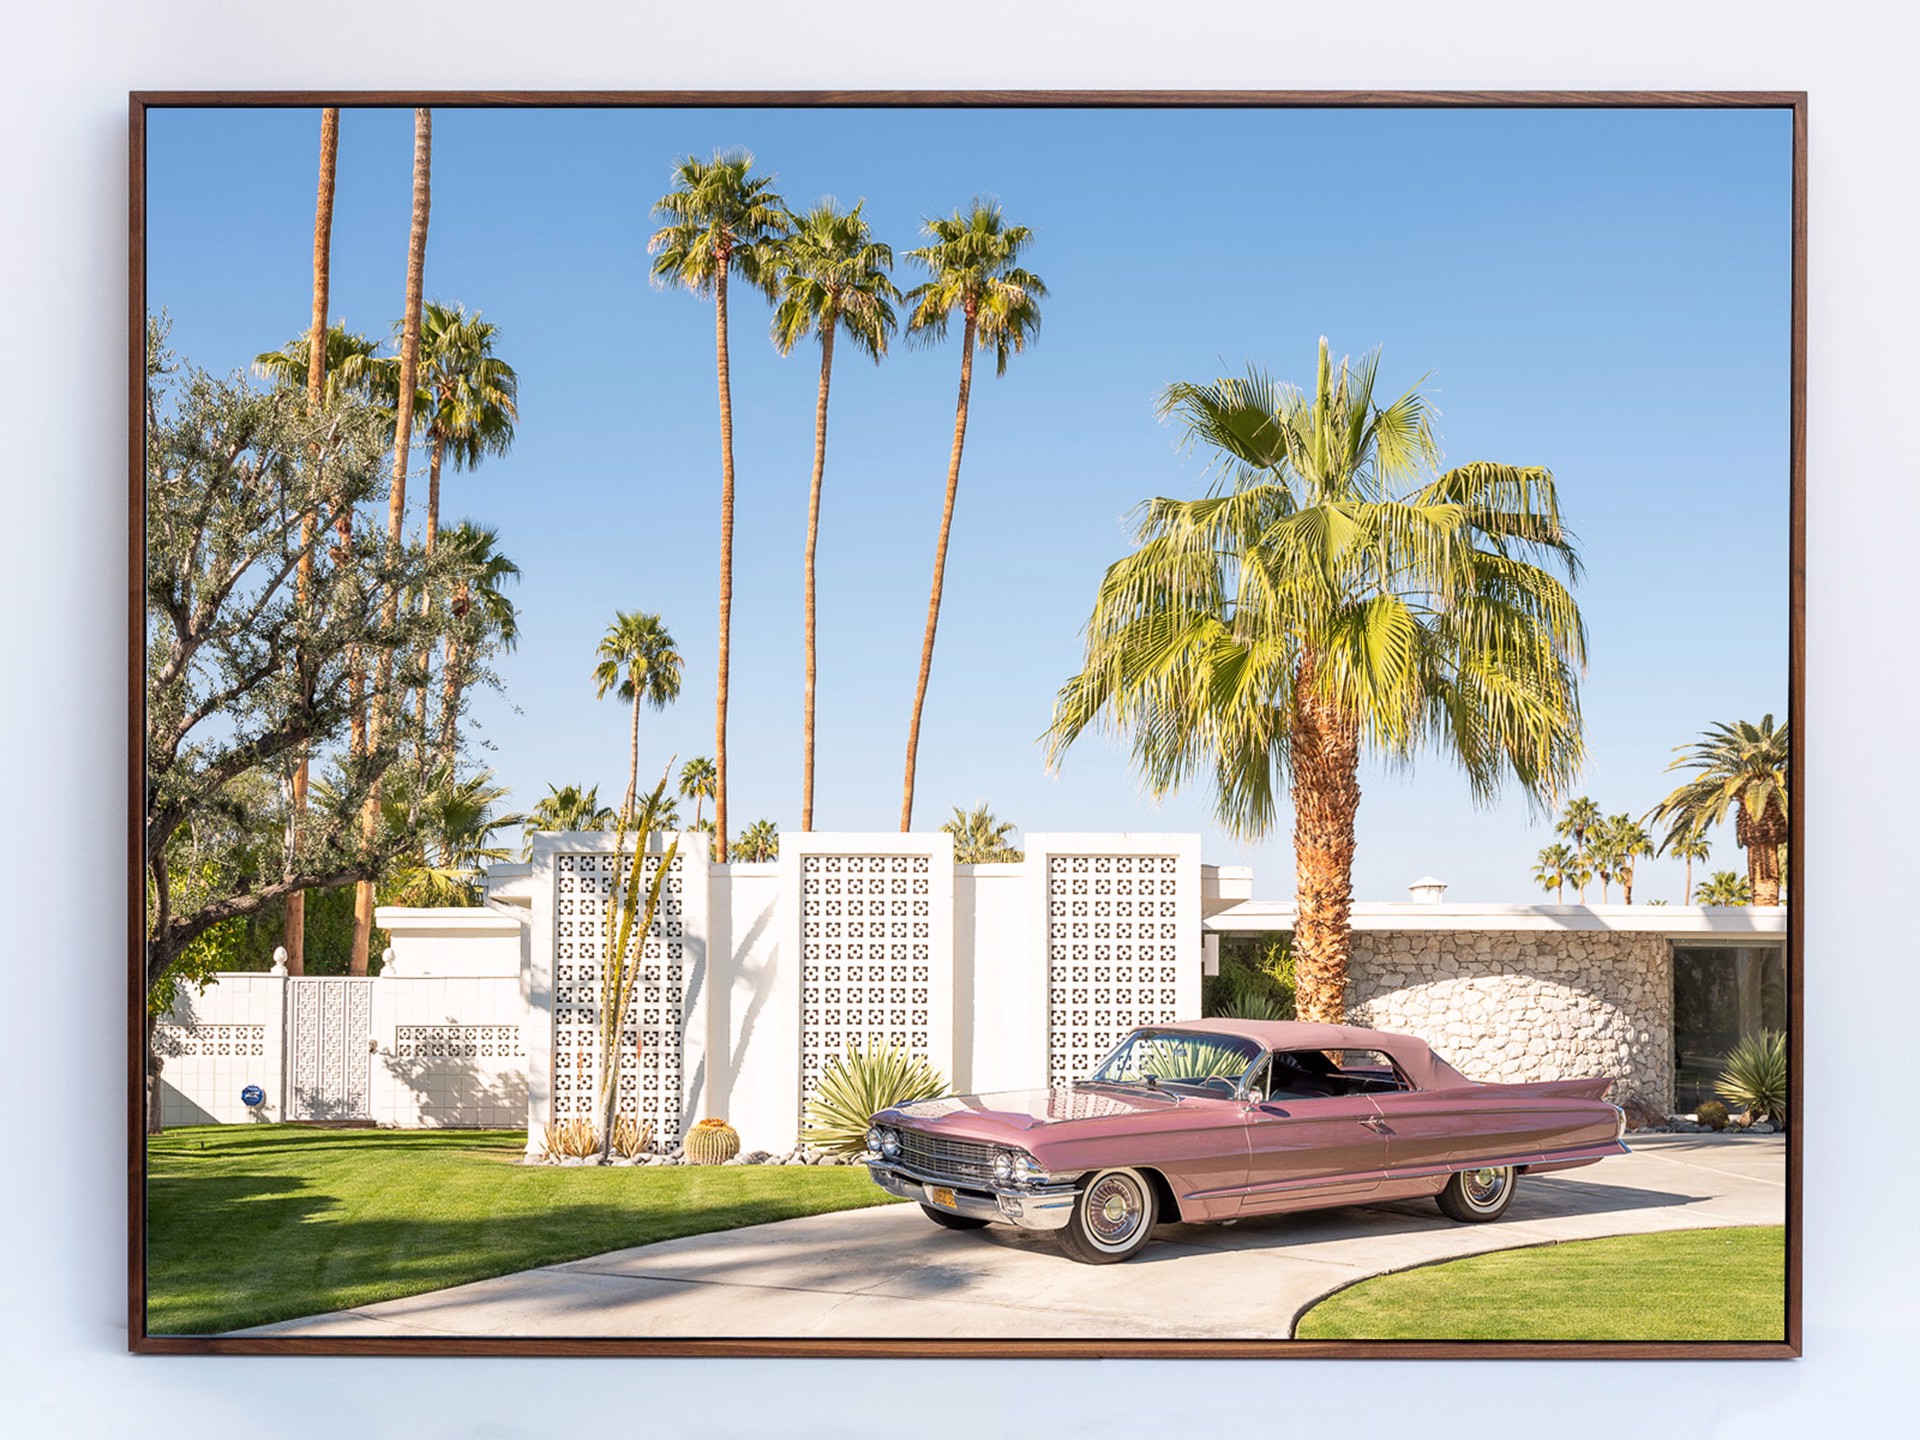 Cadillac Dreams by Patrick Lajoie